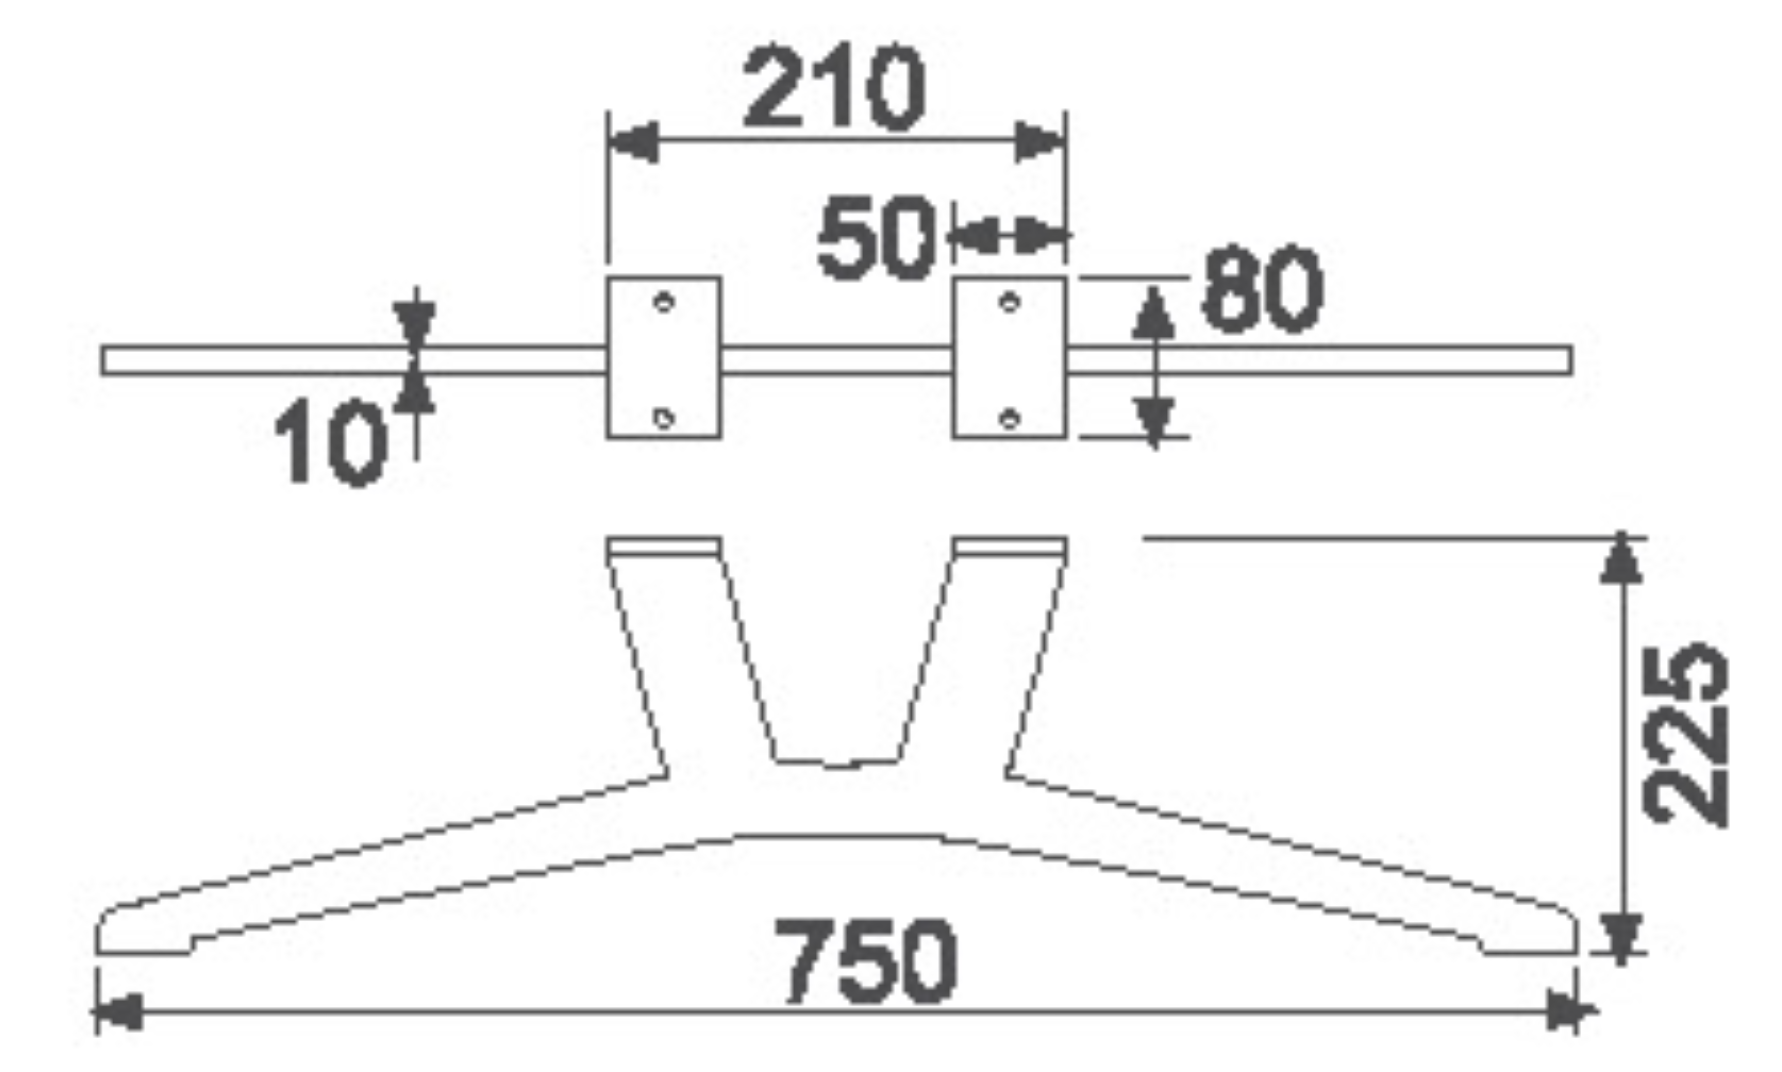 Шинэлэг загвар бүхий лазер хайчлах металл хөл Biaode SHB3018 Буйдангийн автомат механик гагнуур Шинэлэг загвар бүхий лазер зүсэгч металл хөл/SHB3018 (H: 5.9 инч) Онцлох зураг